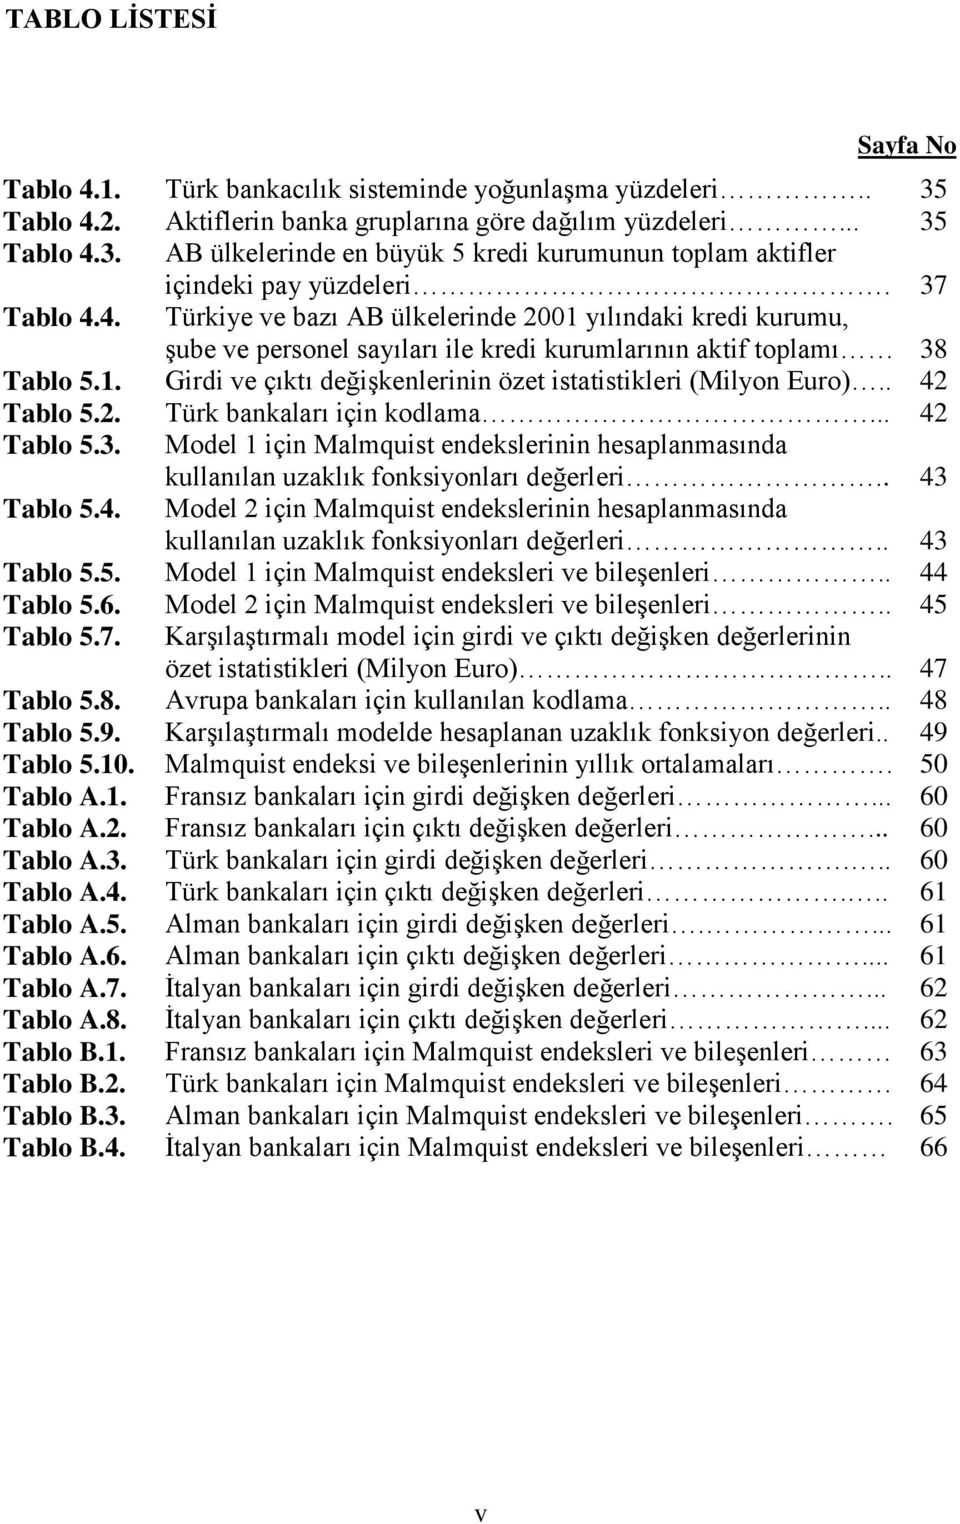 . 42 Tabl 5.2. Türk bankaları için kdlama... 42 Tabl 5.3. Mdel için Malmquis endekslerinin hesaplanmasında kullanılan uzaklık fnksinları değerleri.. 43 Tabl 5.4. Mdel 2 için Malmquis endekslerinin hesaplanmasında kullanılan uzaklık fnksinları değerleri.